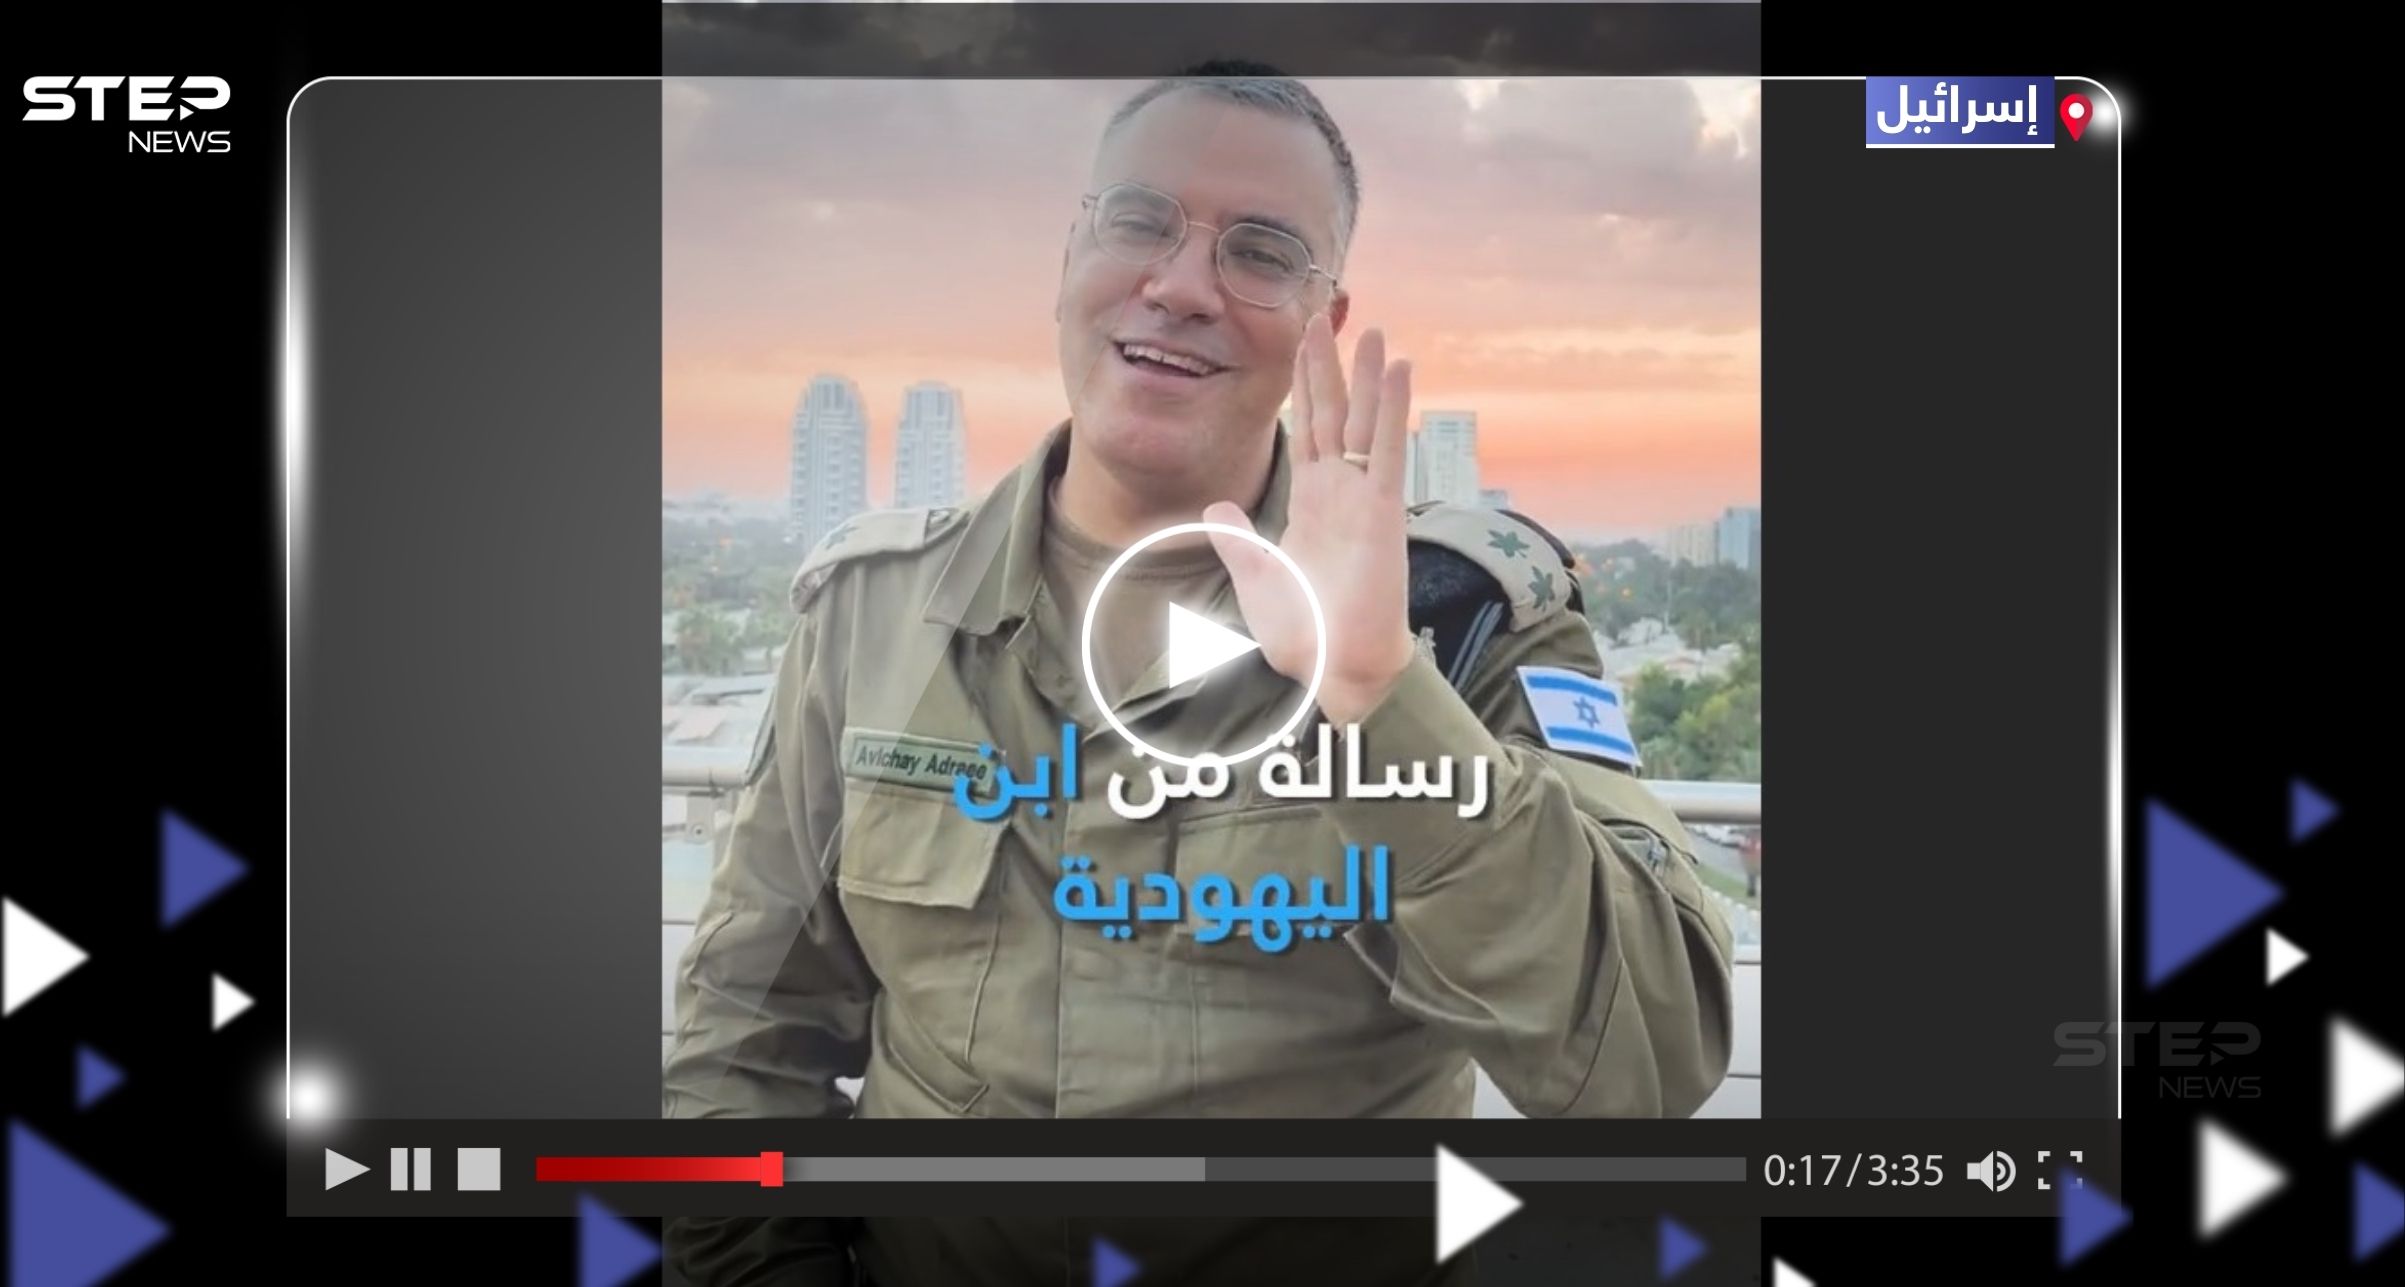 المتحدث باسم الجيش الإسرائيلي أفيخاي أدرعي يوجه رسالة من ابن اليهودية إلى السنوار